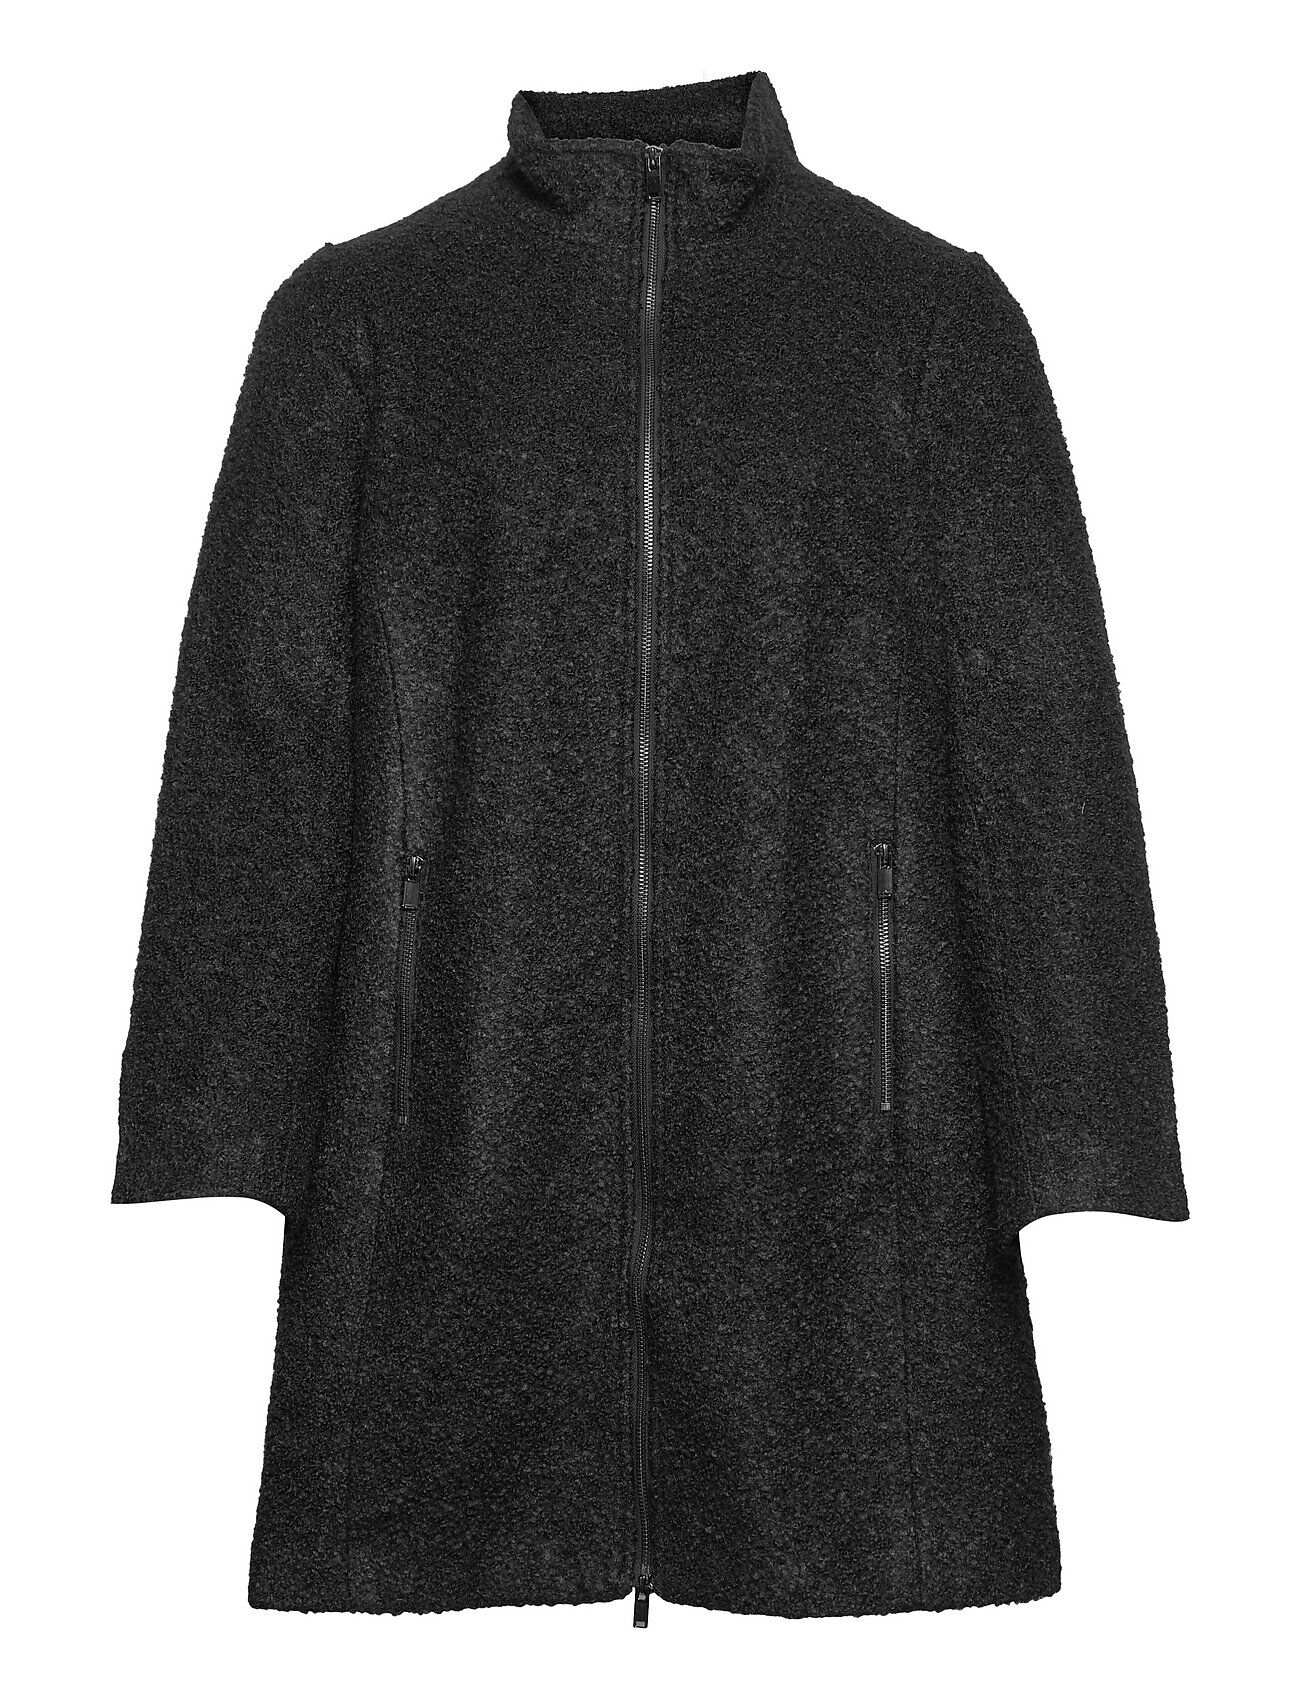 Zizzi Caames, L/S, Coat Outerwear Coats Winter Coats Svart Zizzi